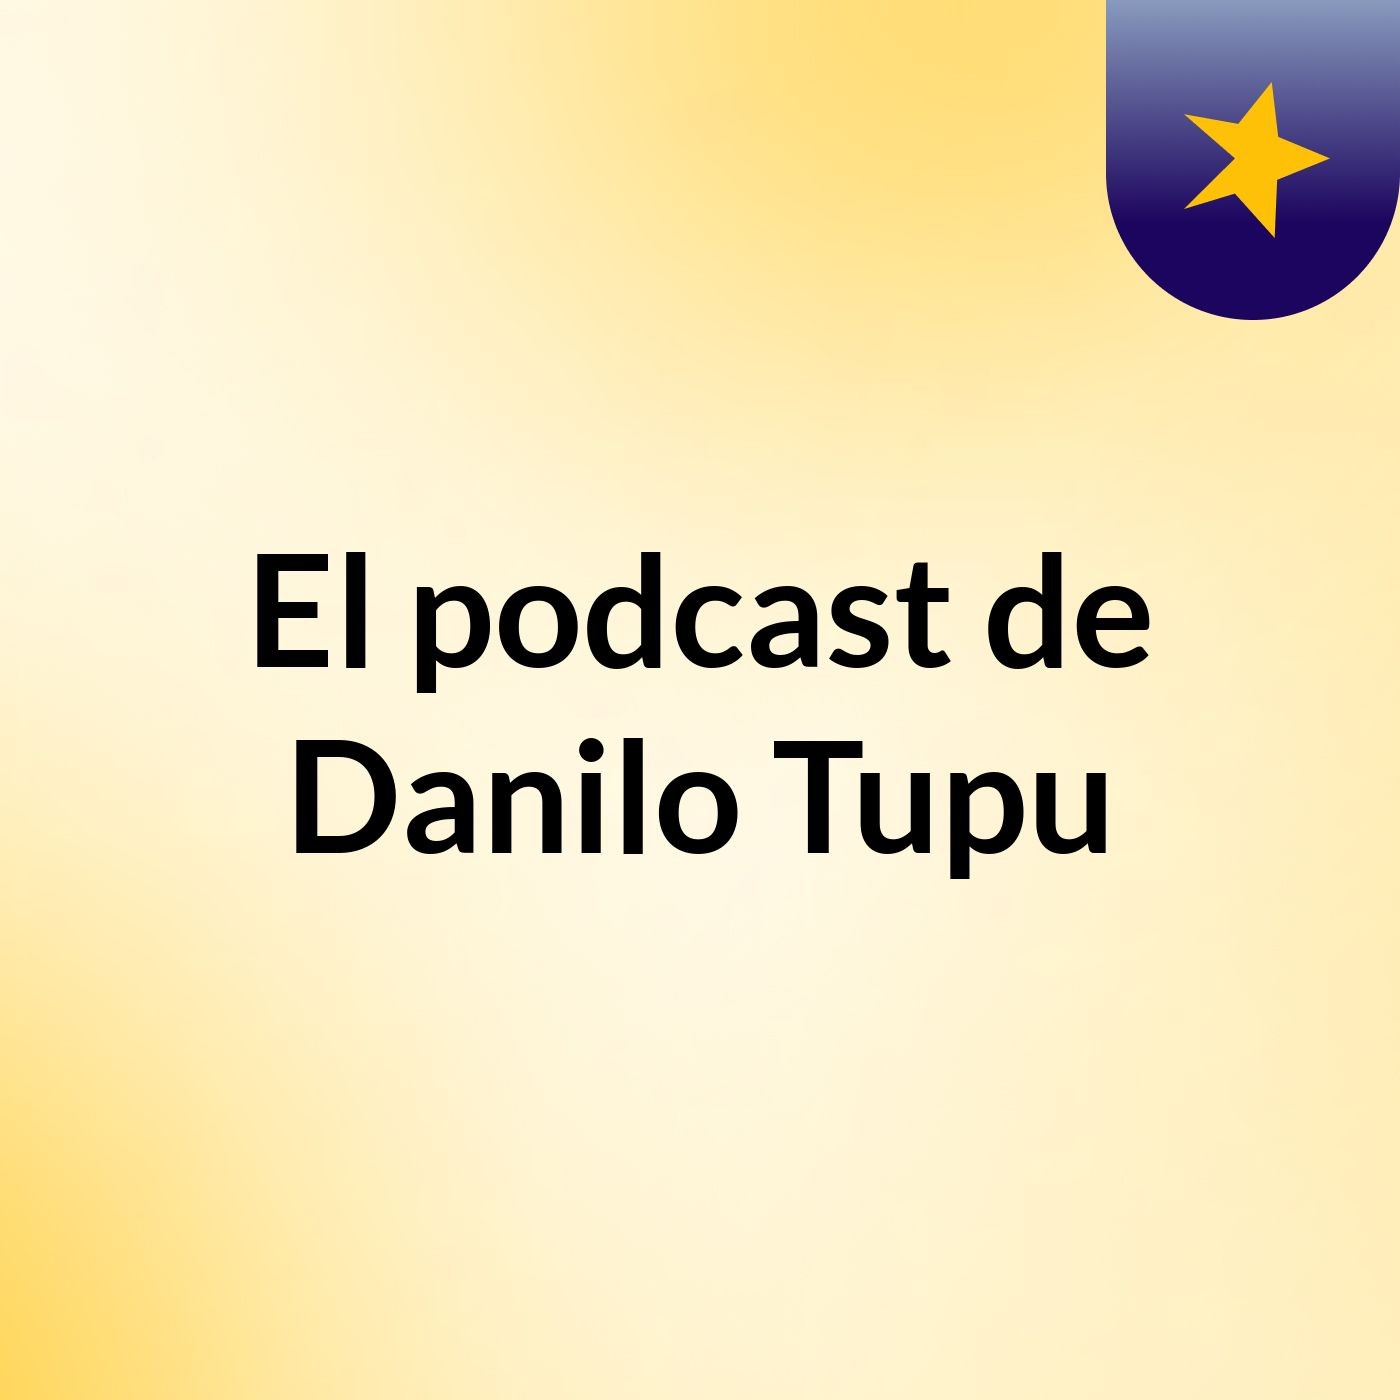 El podcast de Danilo Tupu